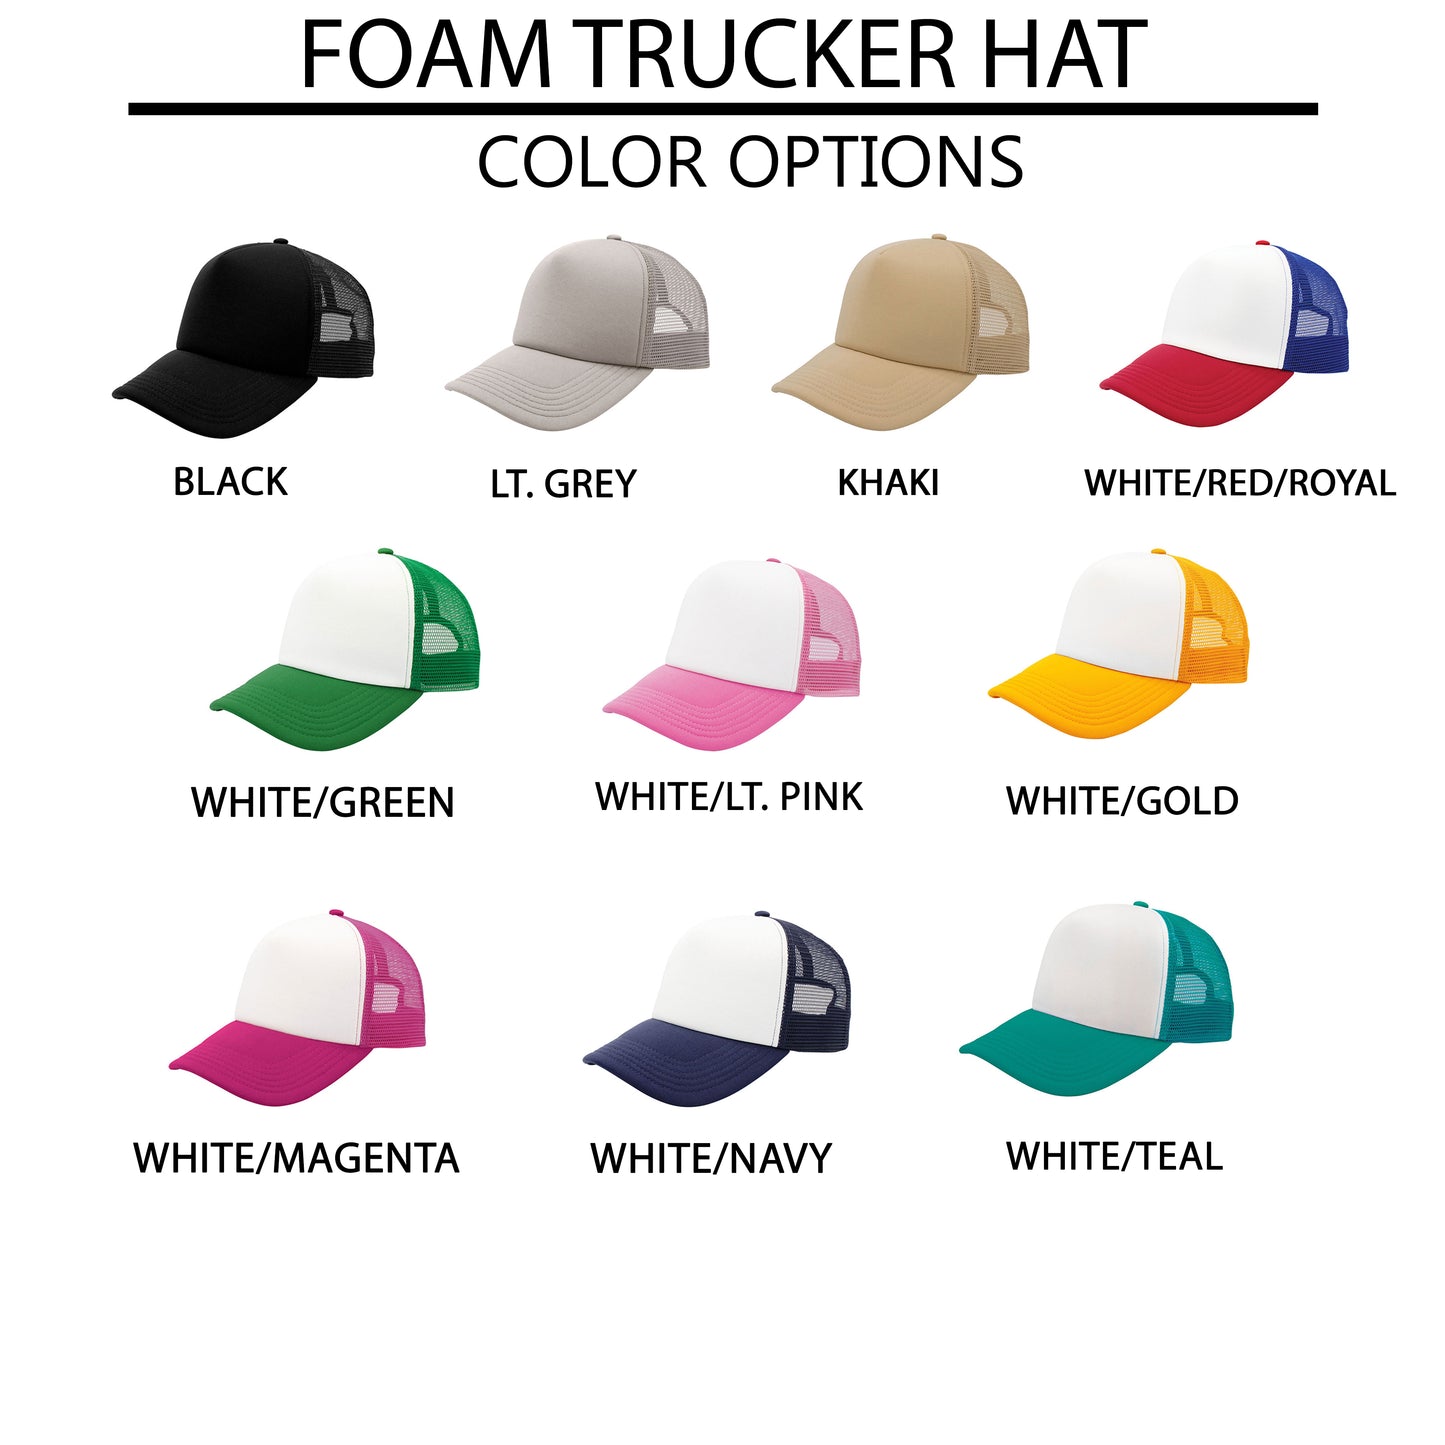 Child Of God Heart | Foam Trucker Hat